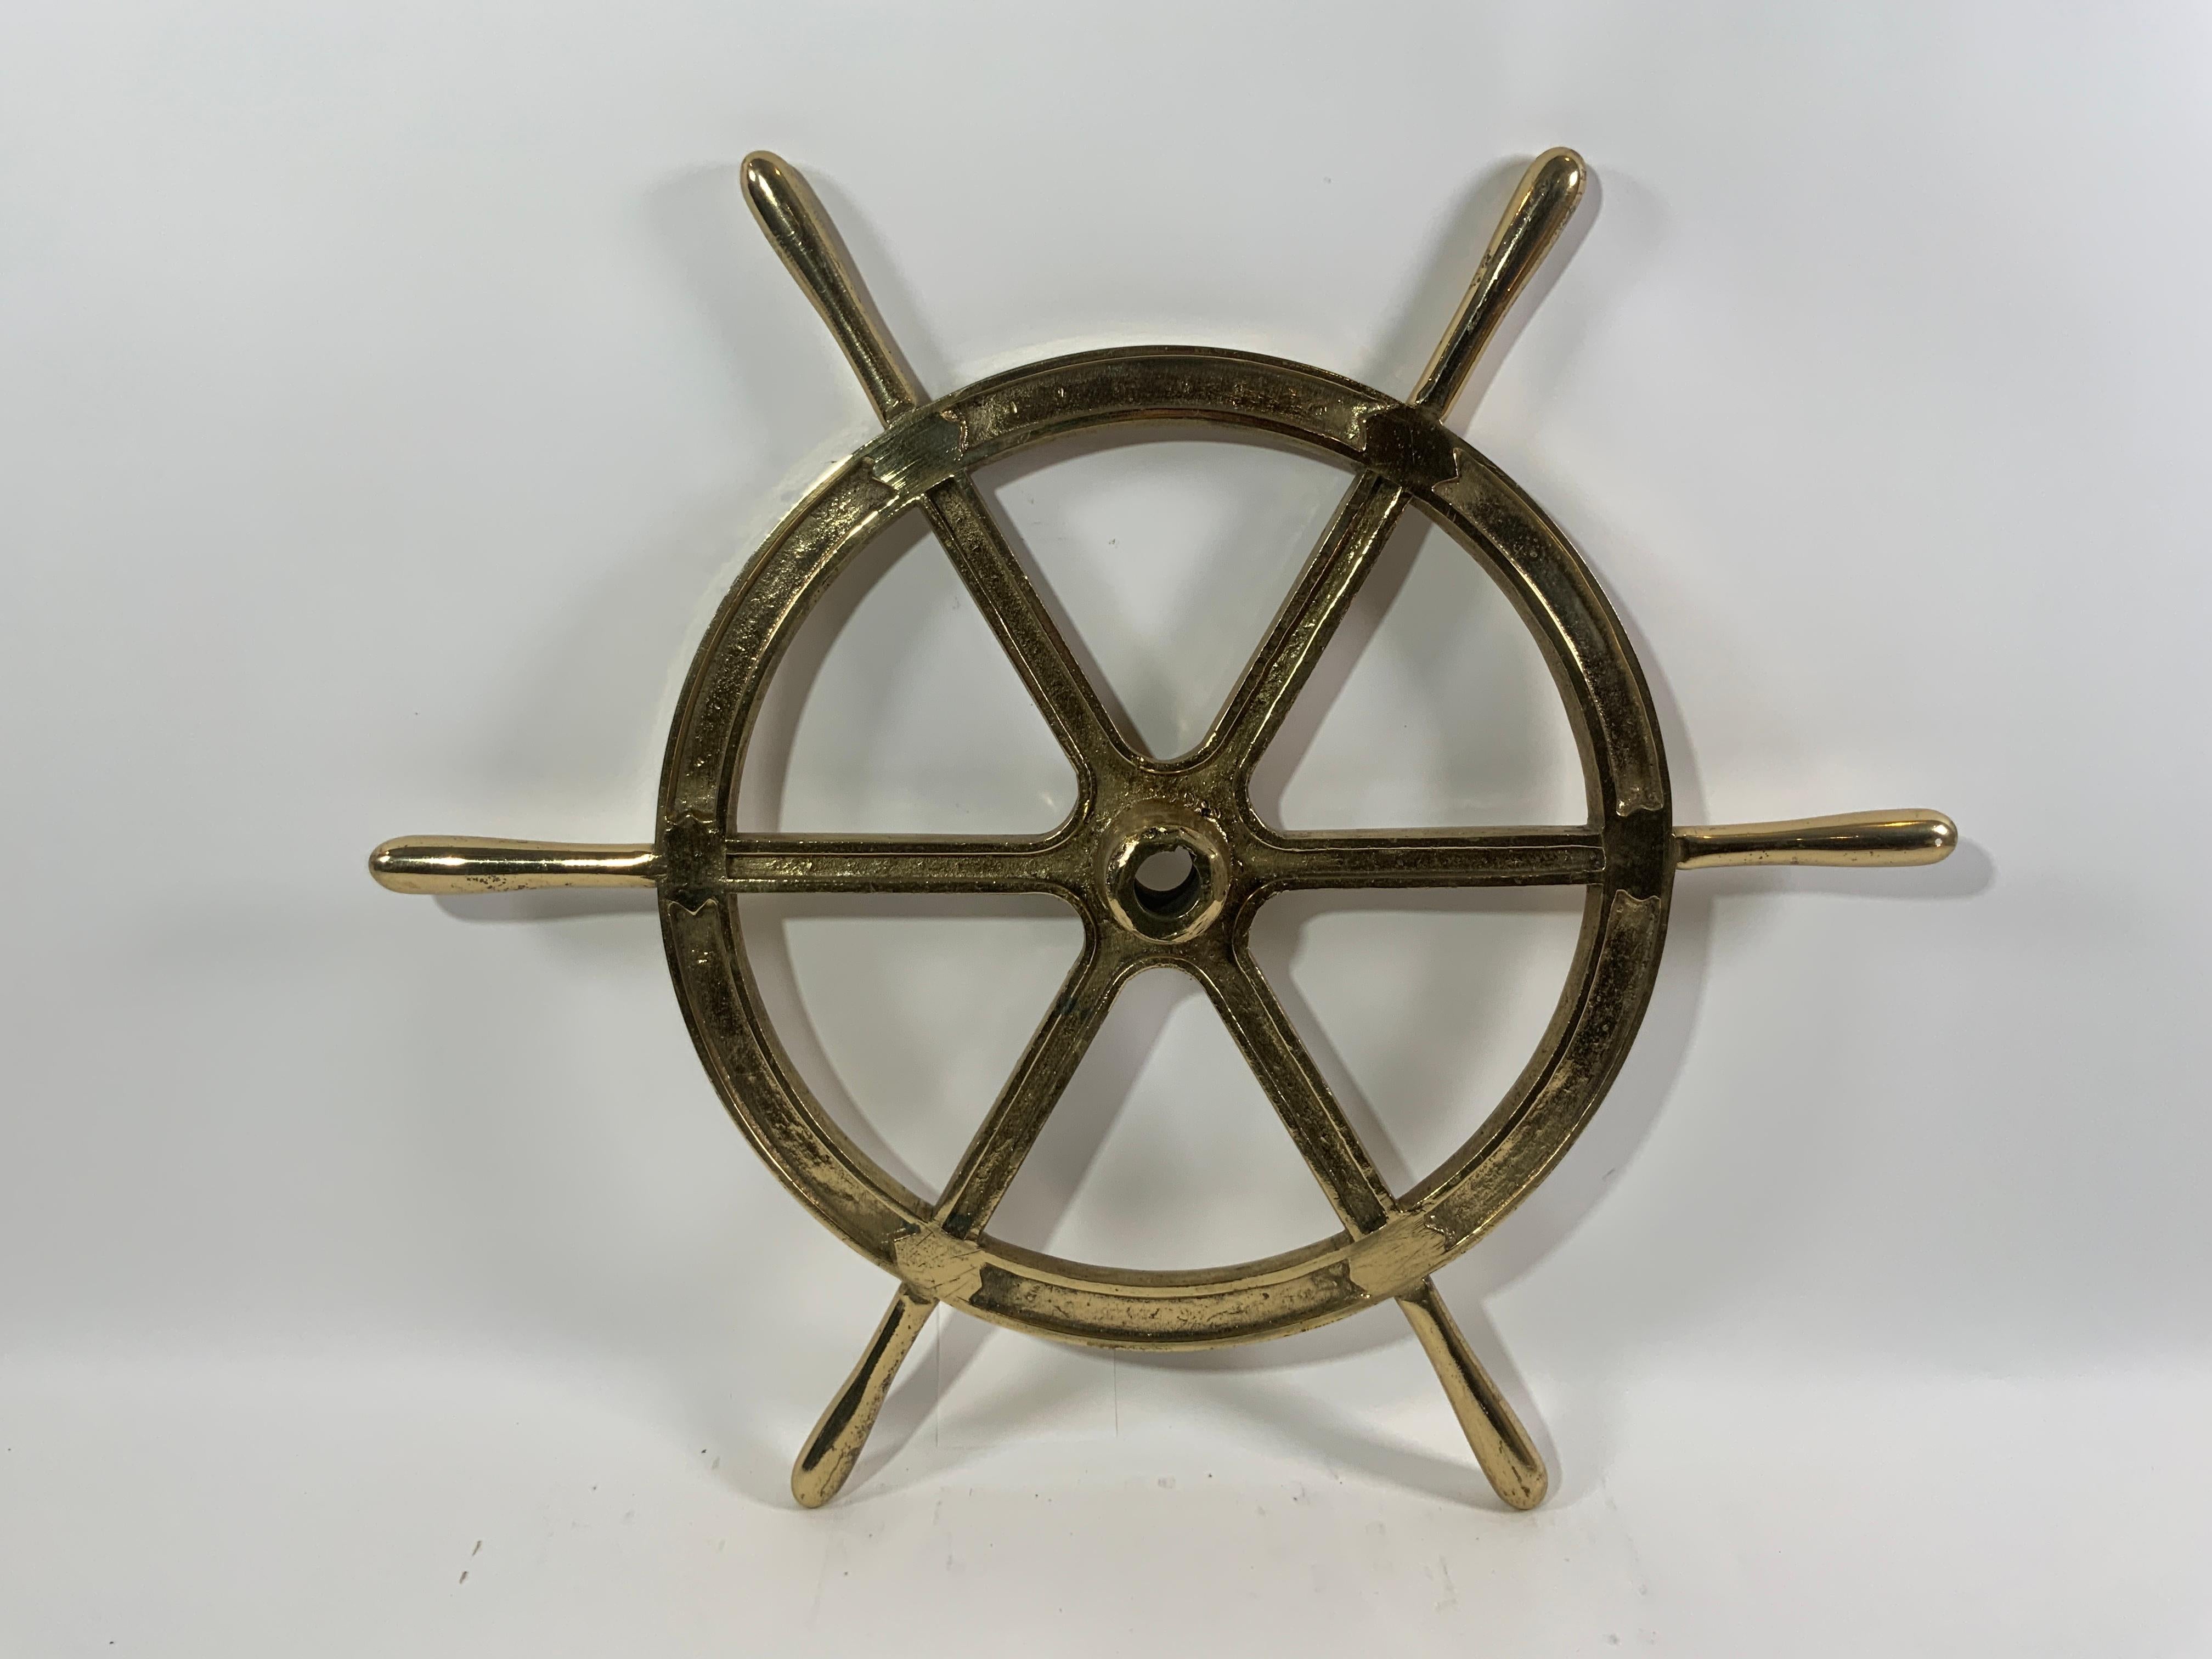 Six Spoke Solid Brass Ships Wheel For Sale 3